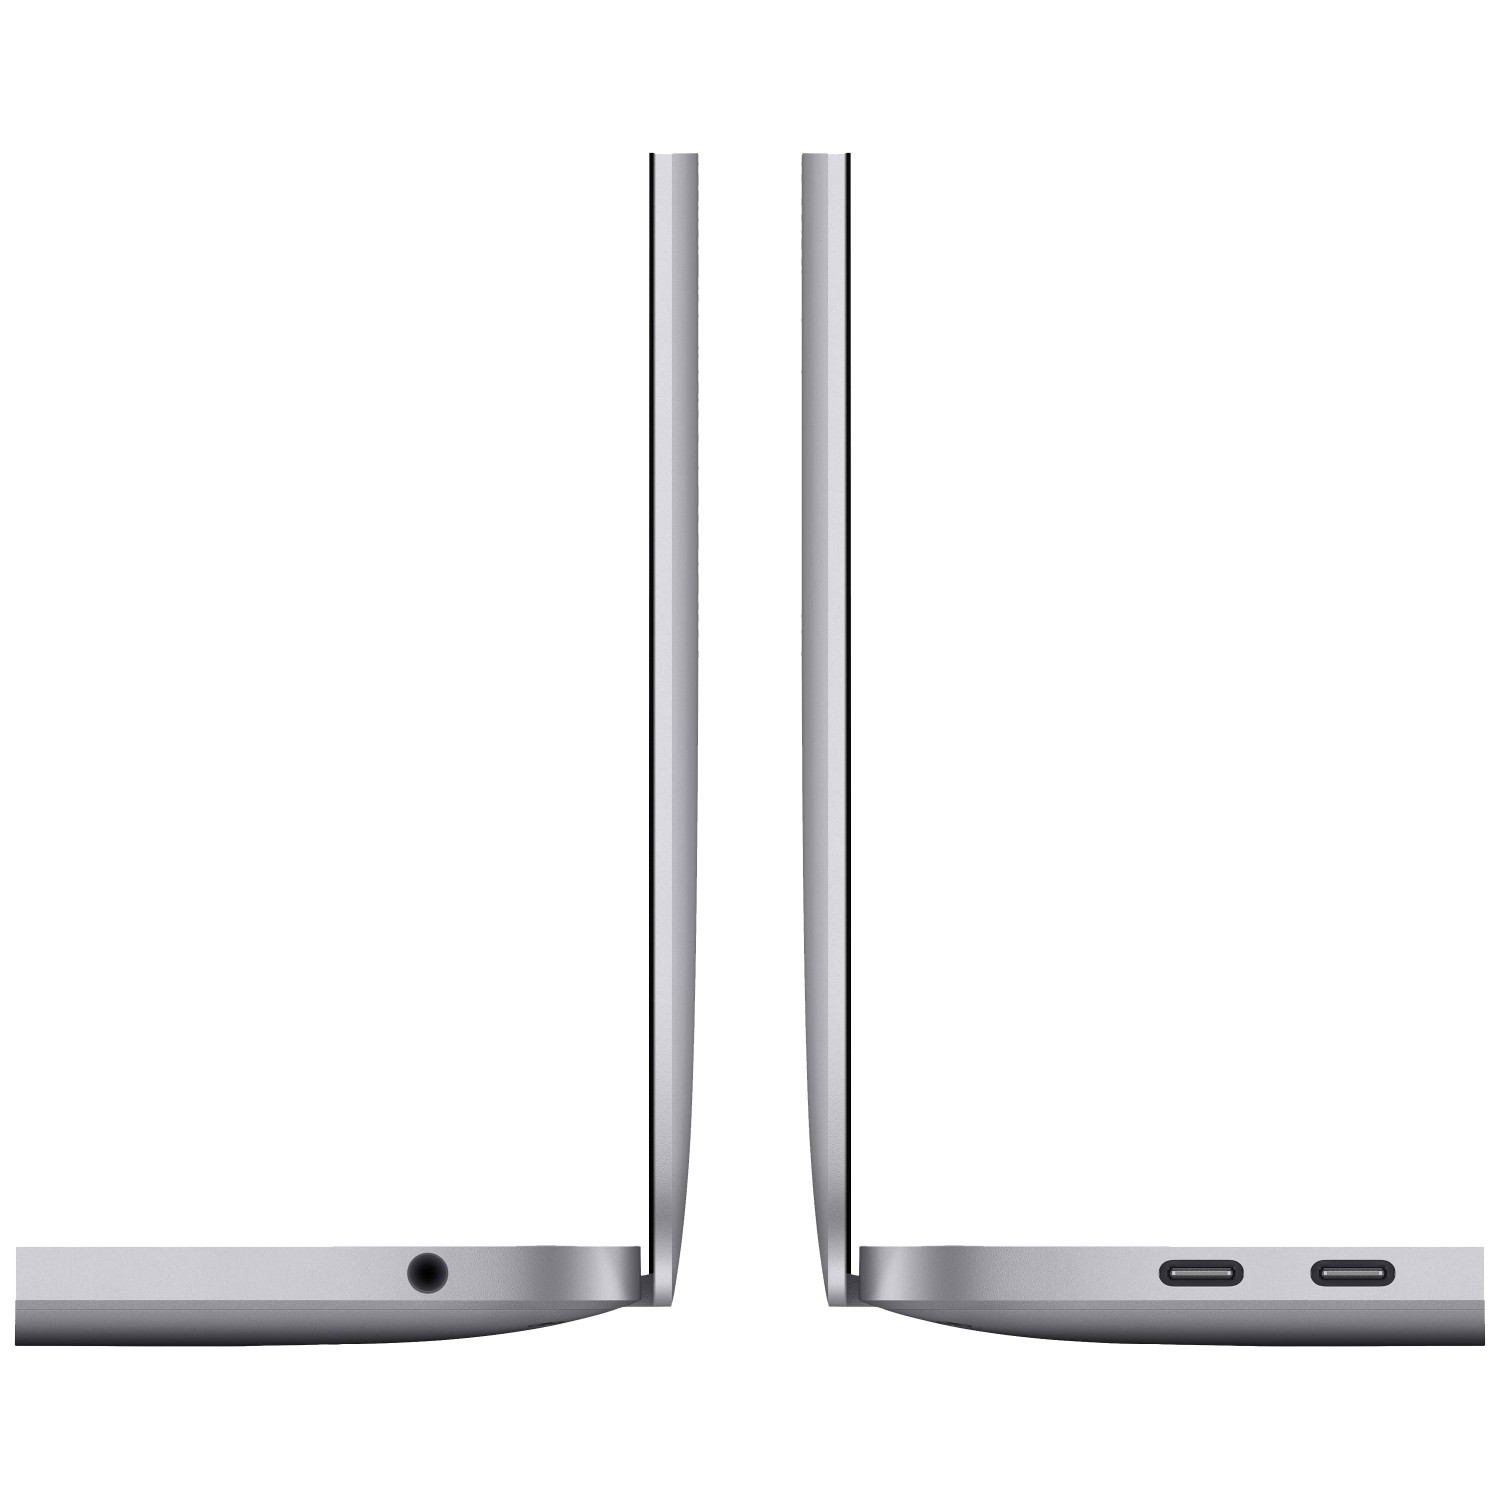 لپ تاپ Apple MacBook Pro 13 2020 CTO - Space Grey - D-4